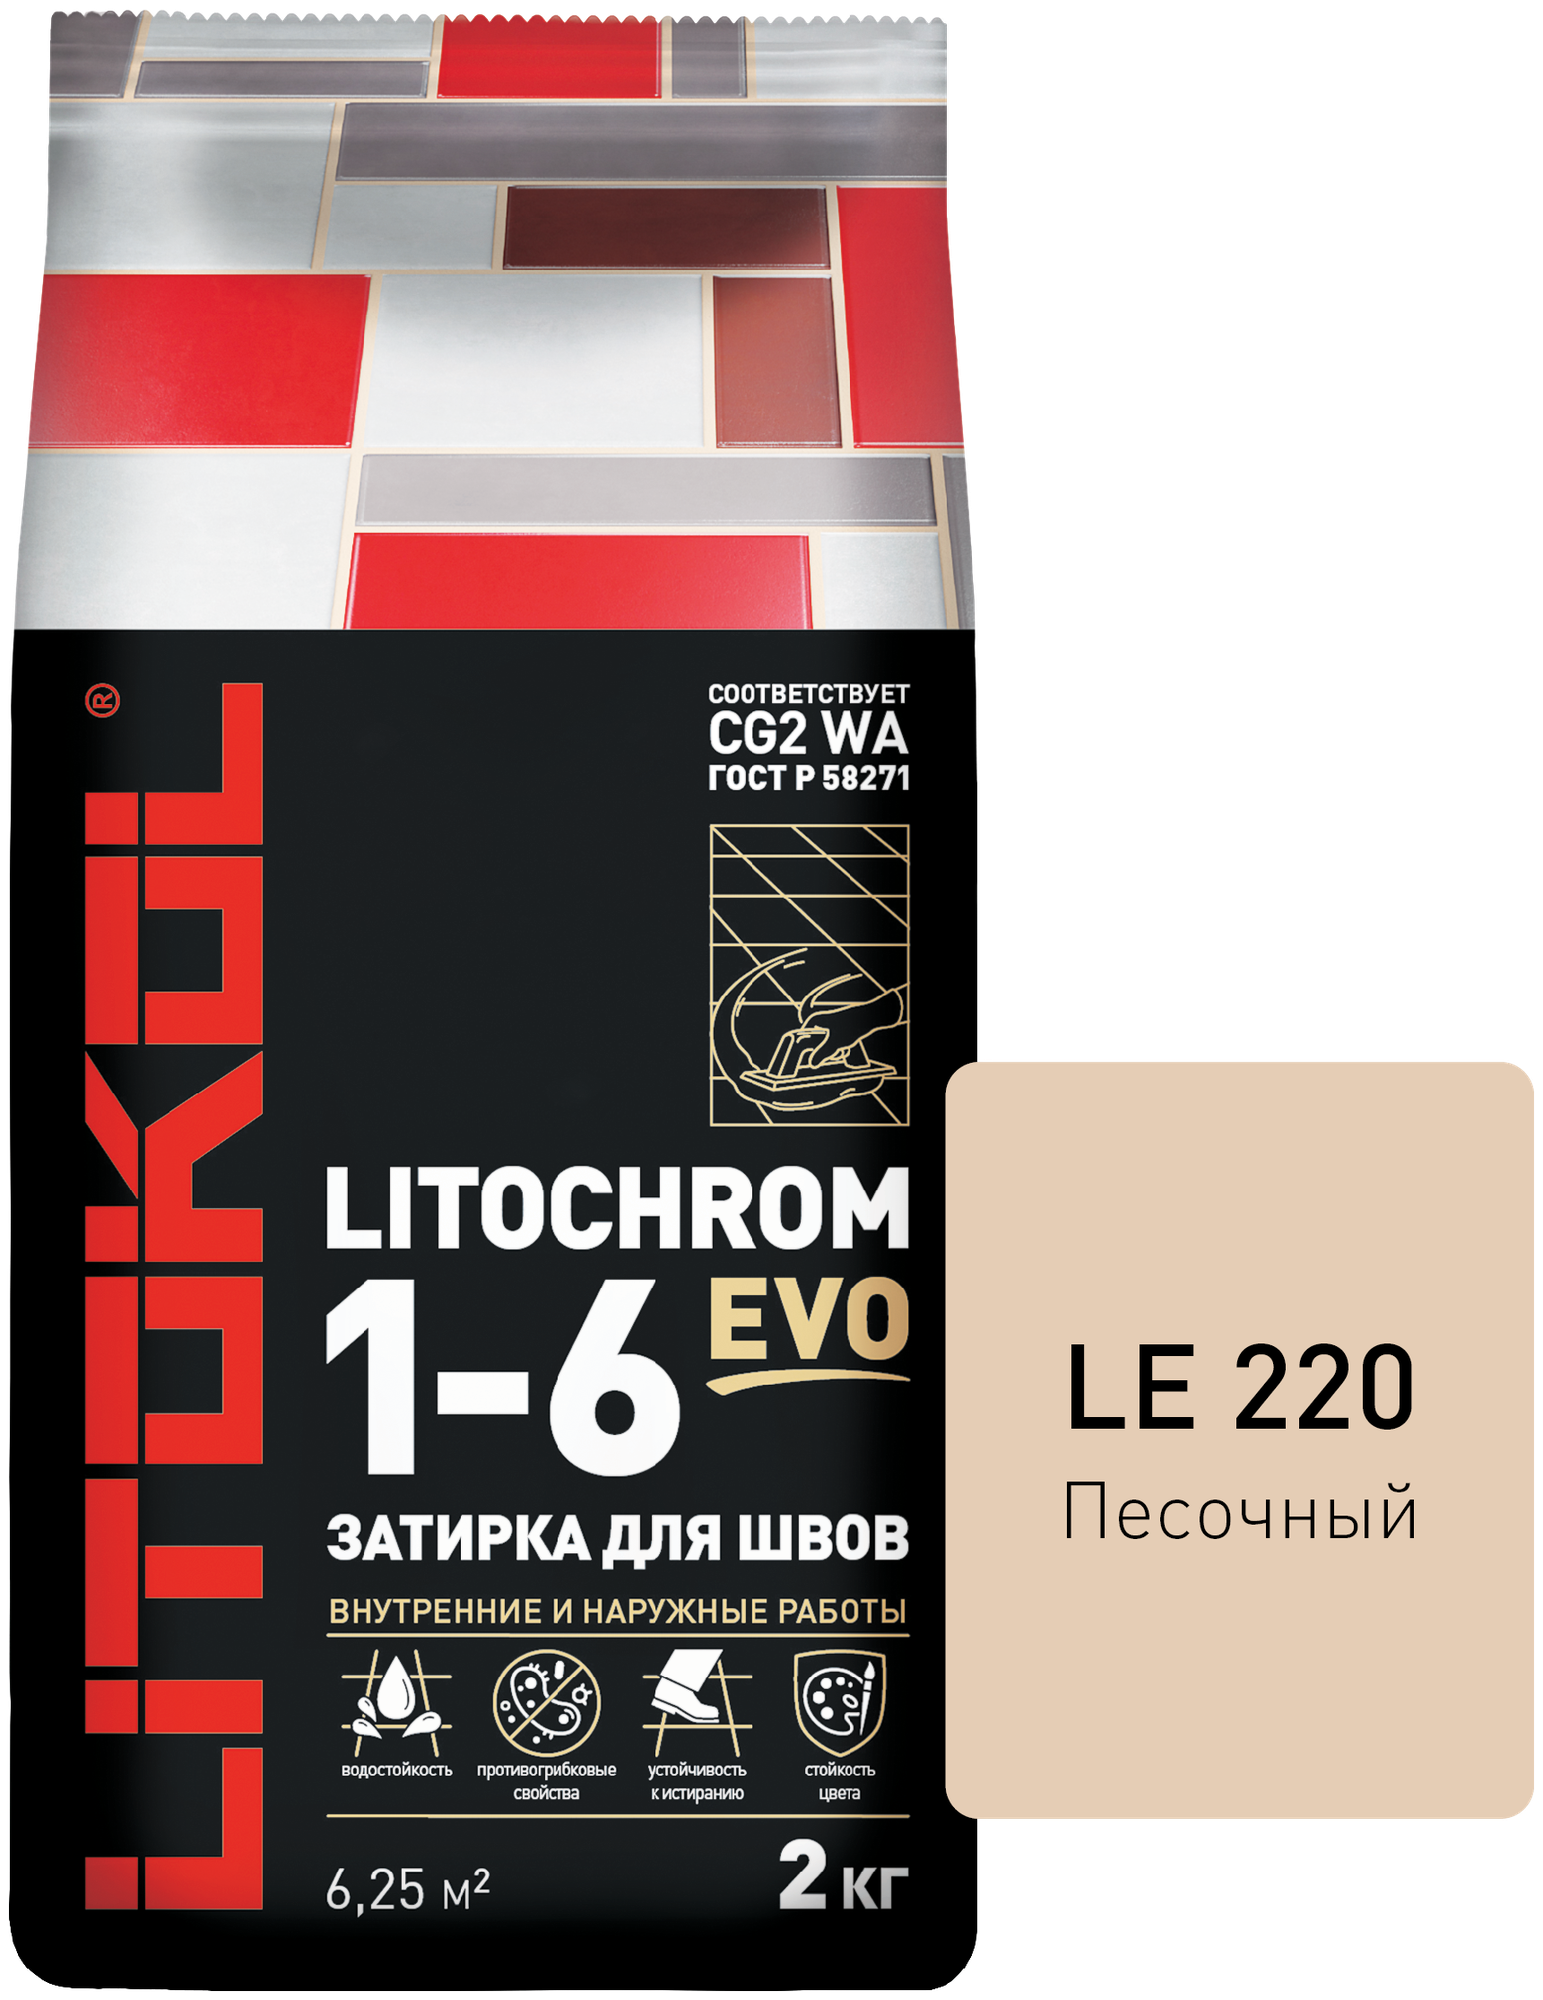 Затирка LITOCHROM 1-6 EVO с противогрибковыми свойствами, LE.220 песочный, 2 кг - фотография № 1